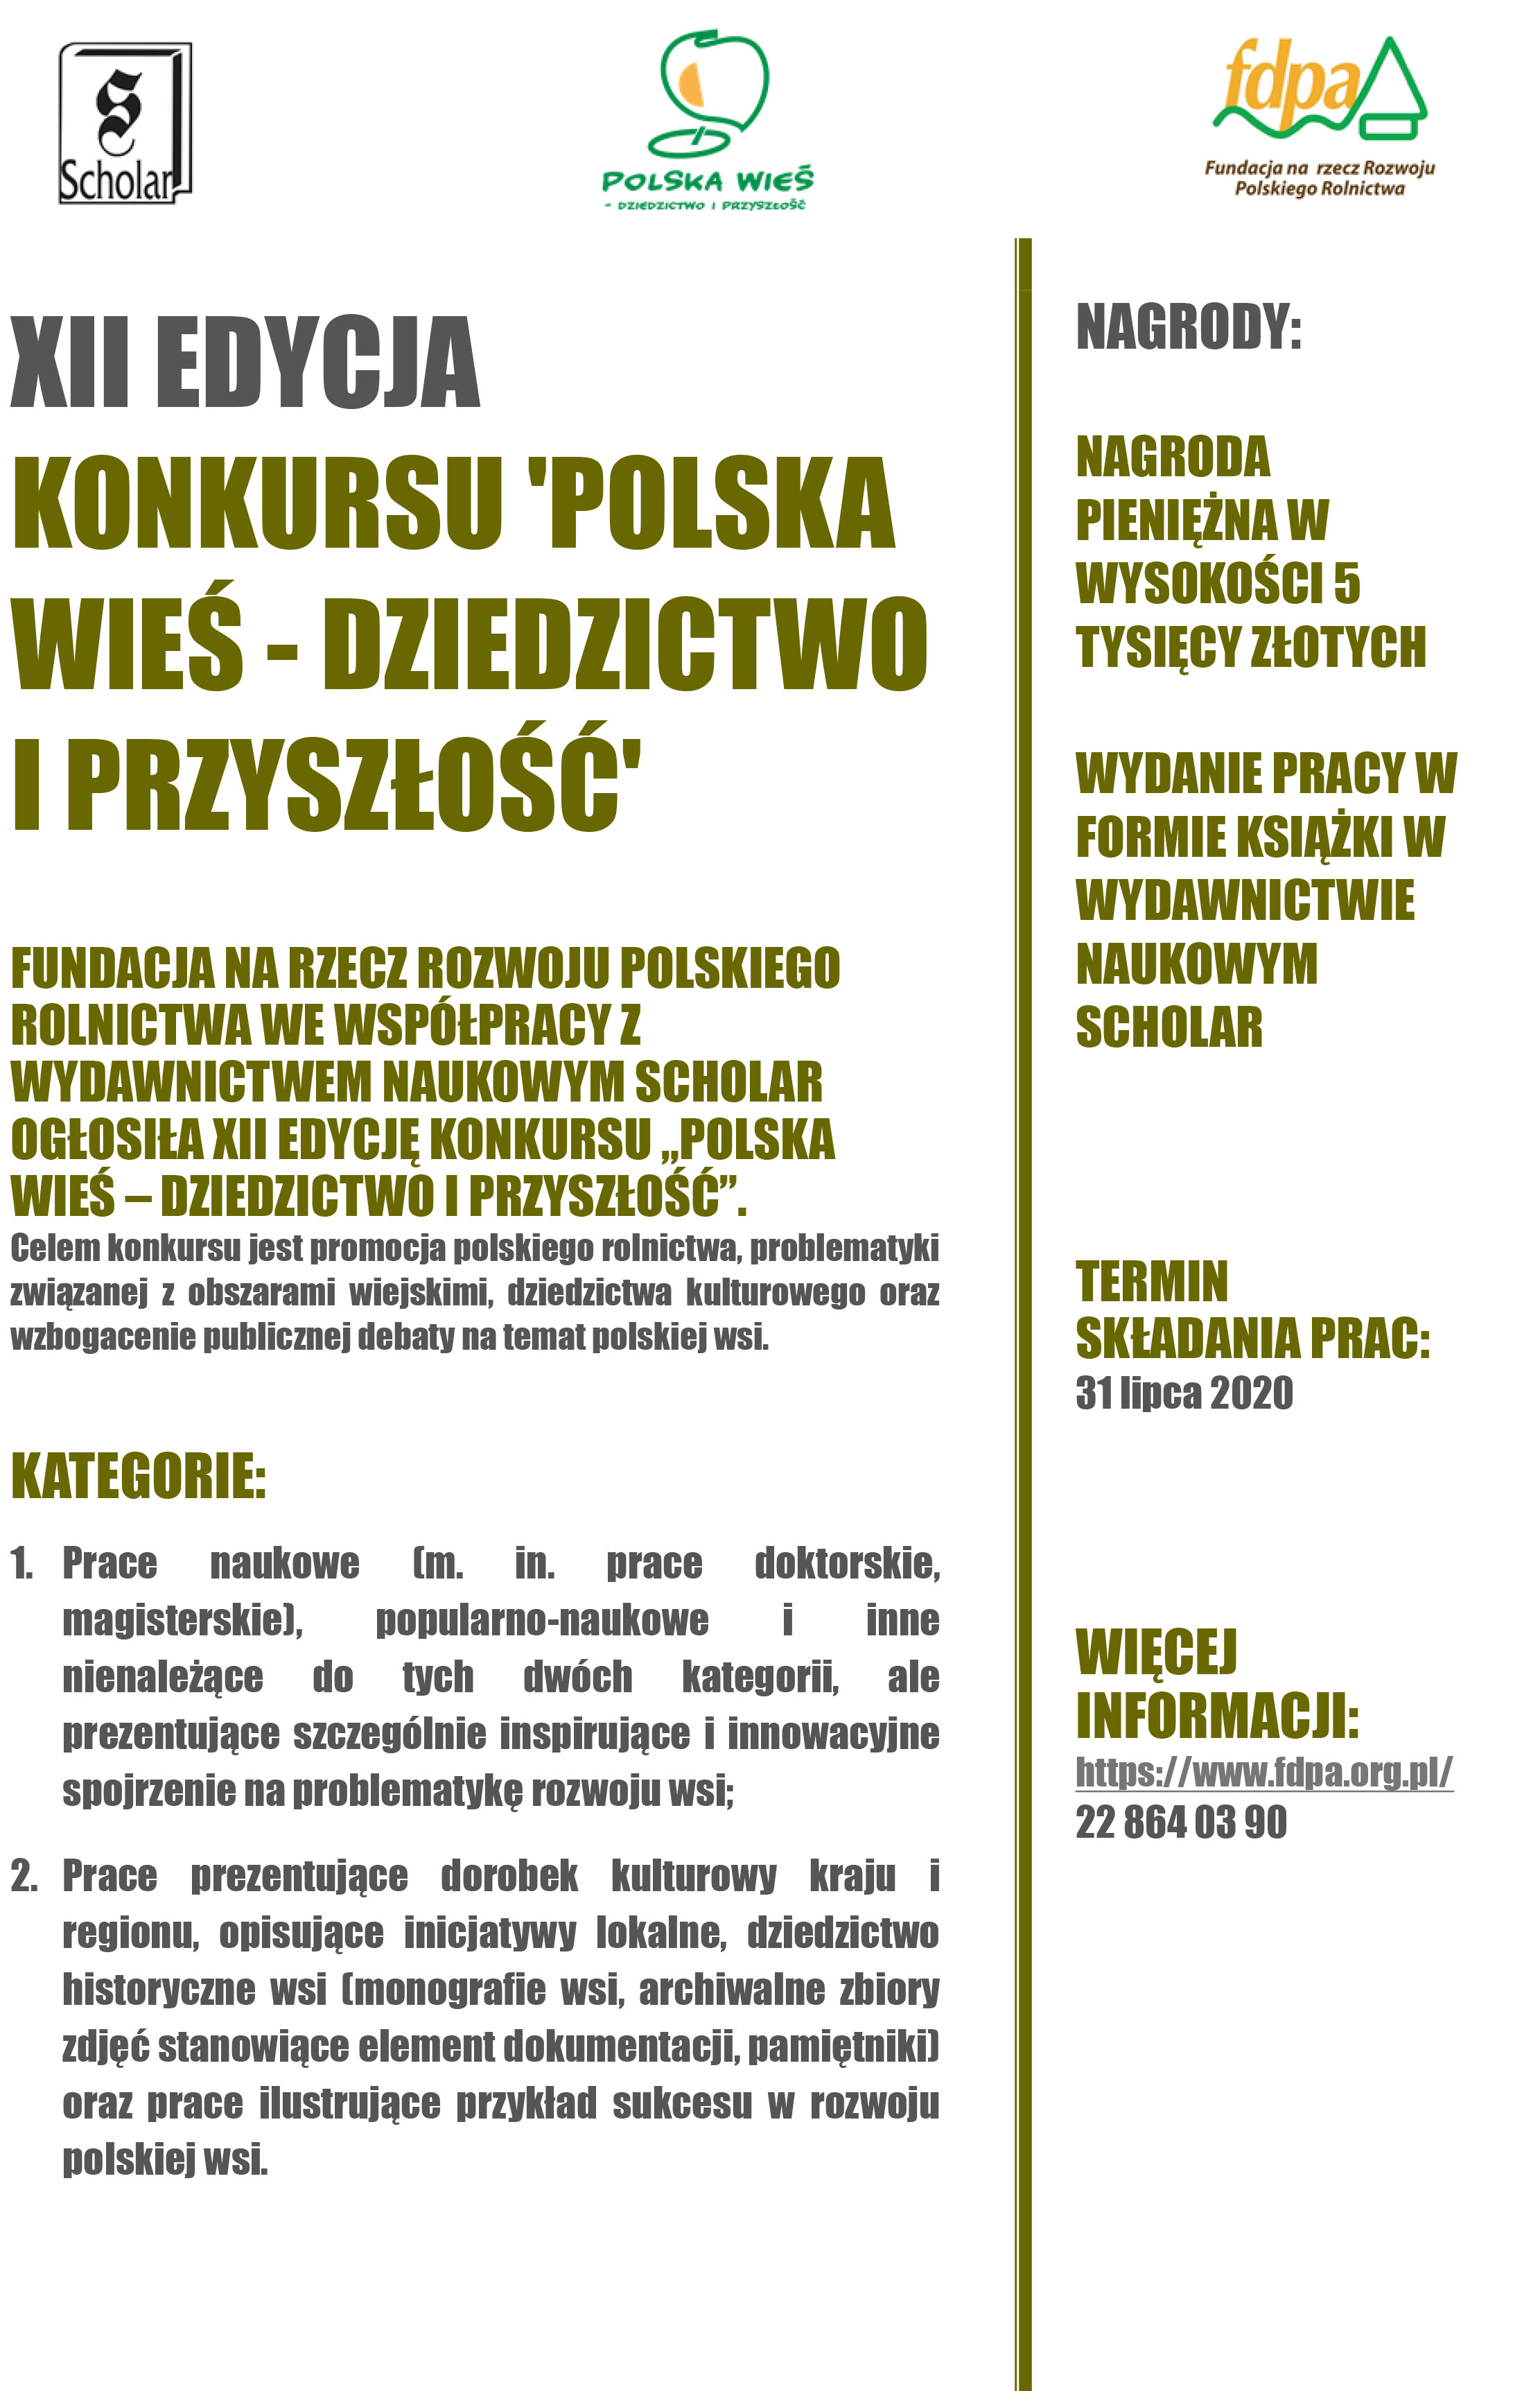 Plakat Polska Wieś FDPA